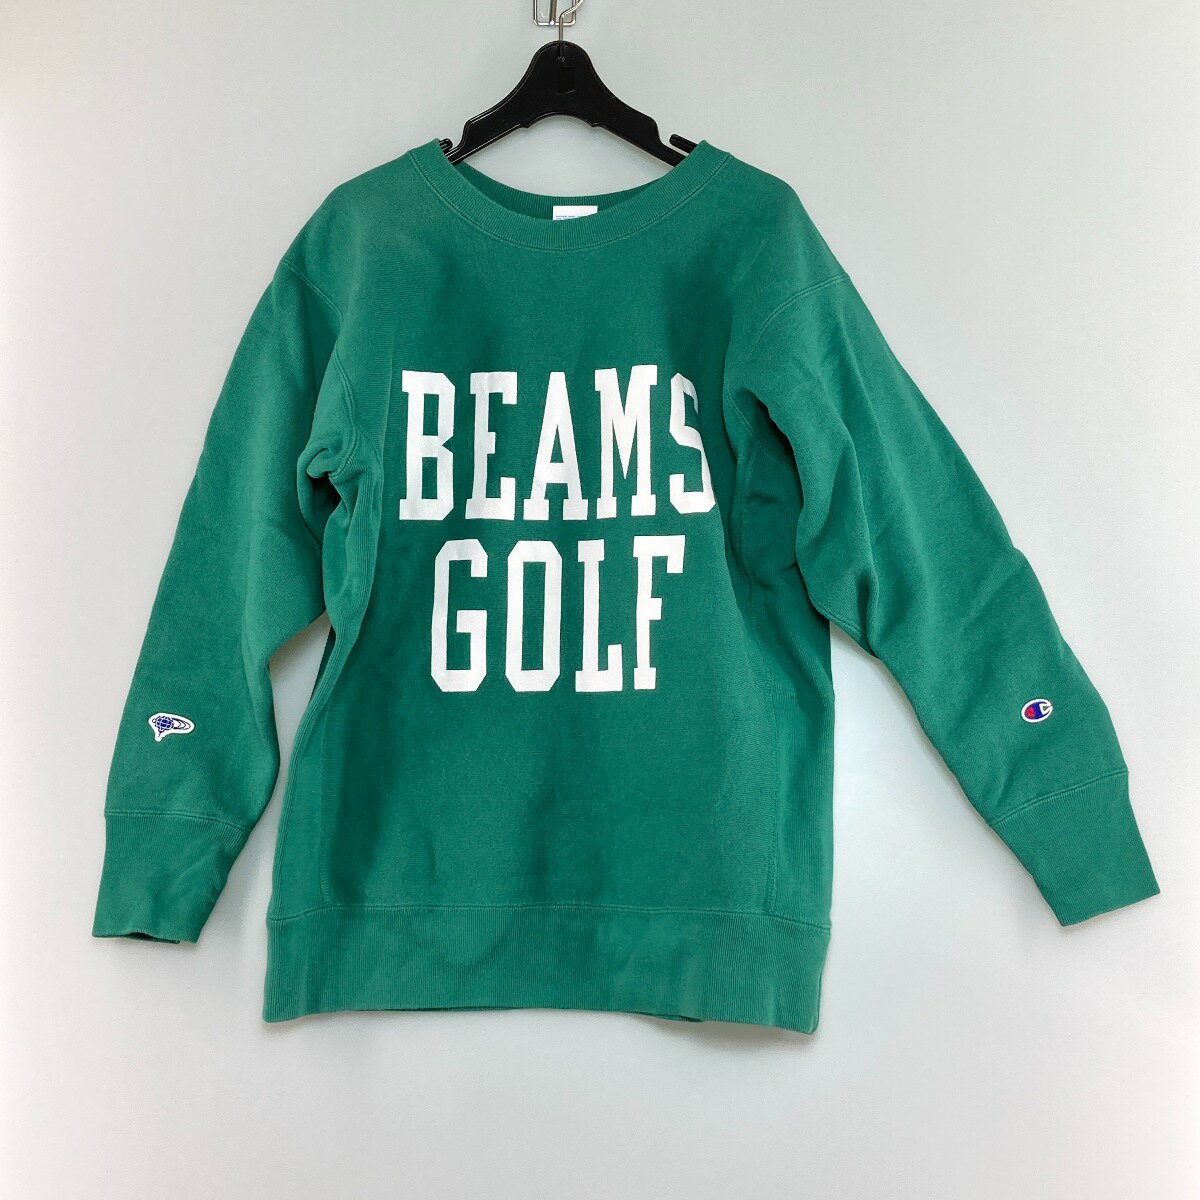 ◎◎【中古】CHAMPION × BEAMS GOLF スウェットシャツ Mサイズ グリーン Bランク